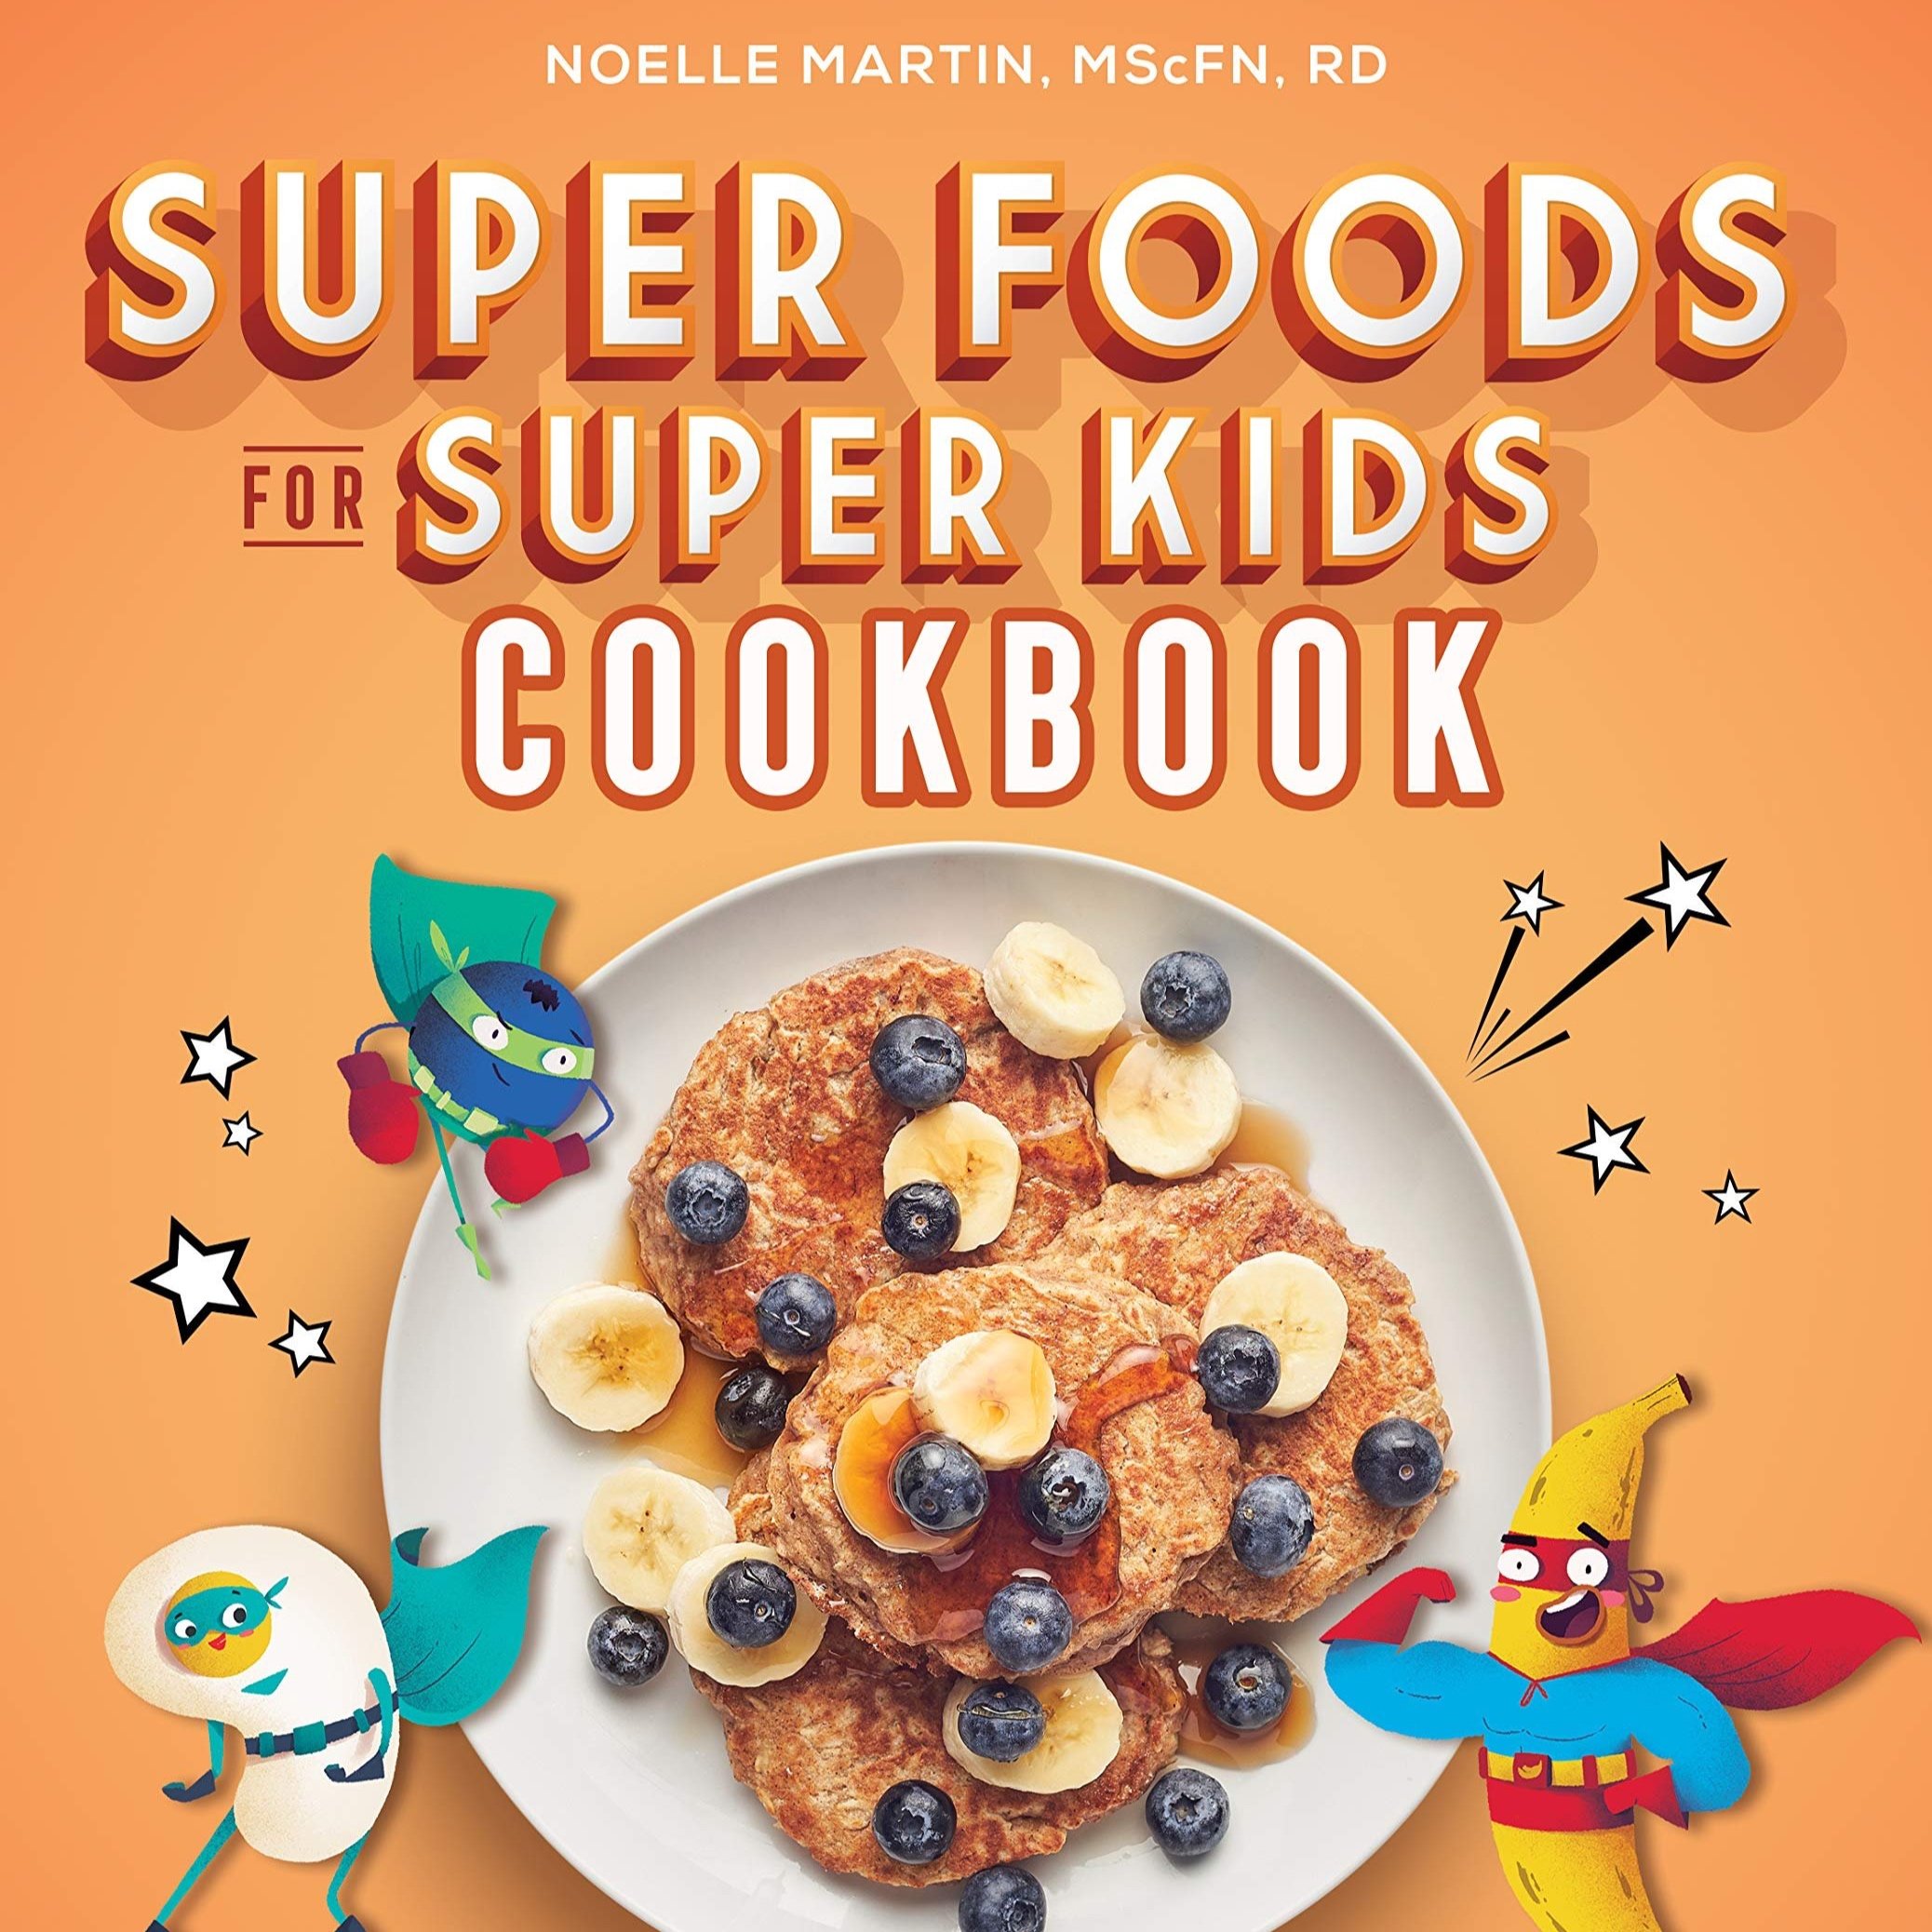 Super foods for super kids book